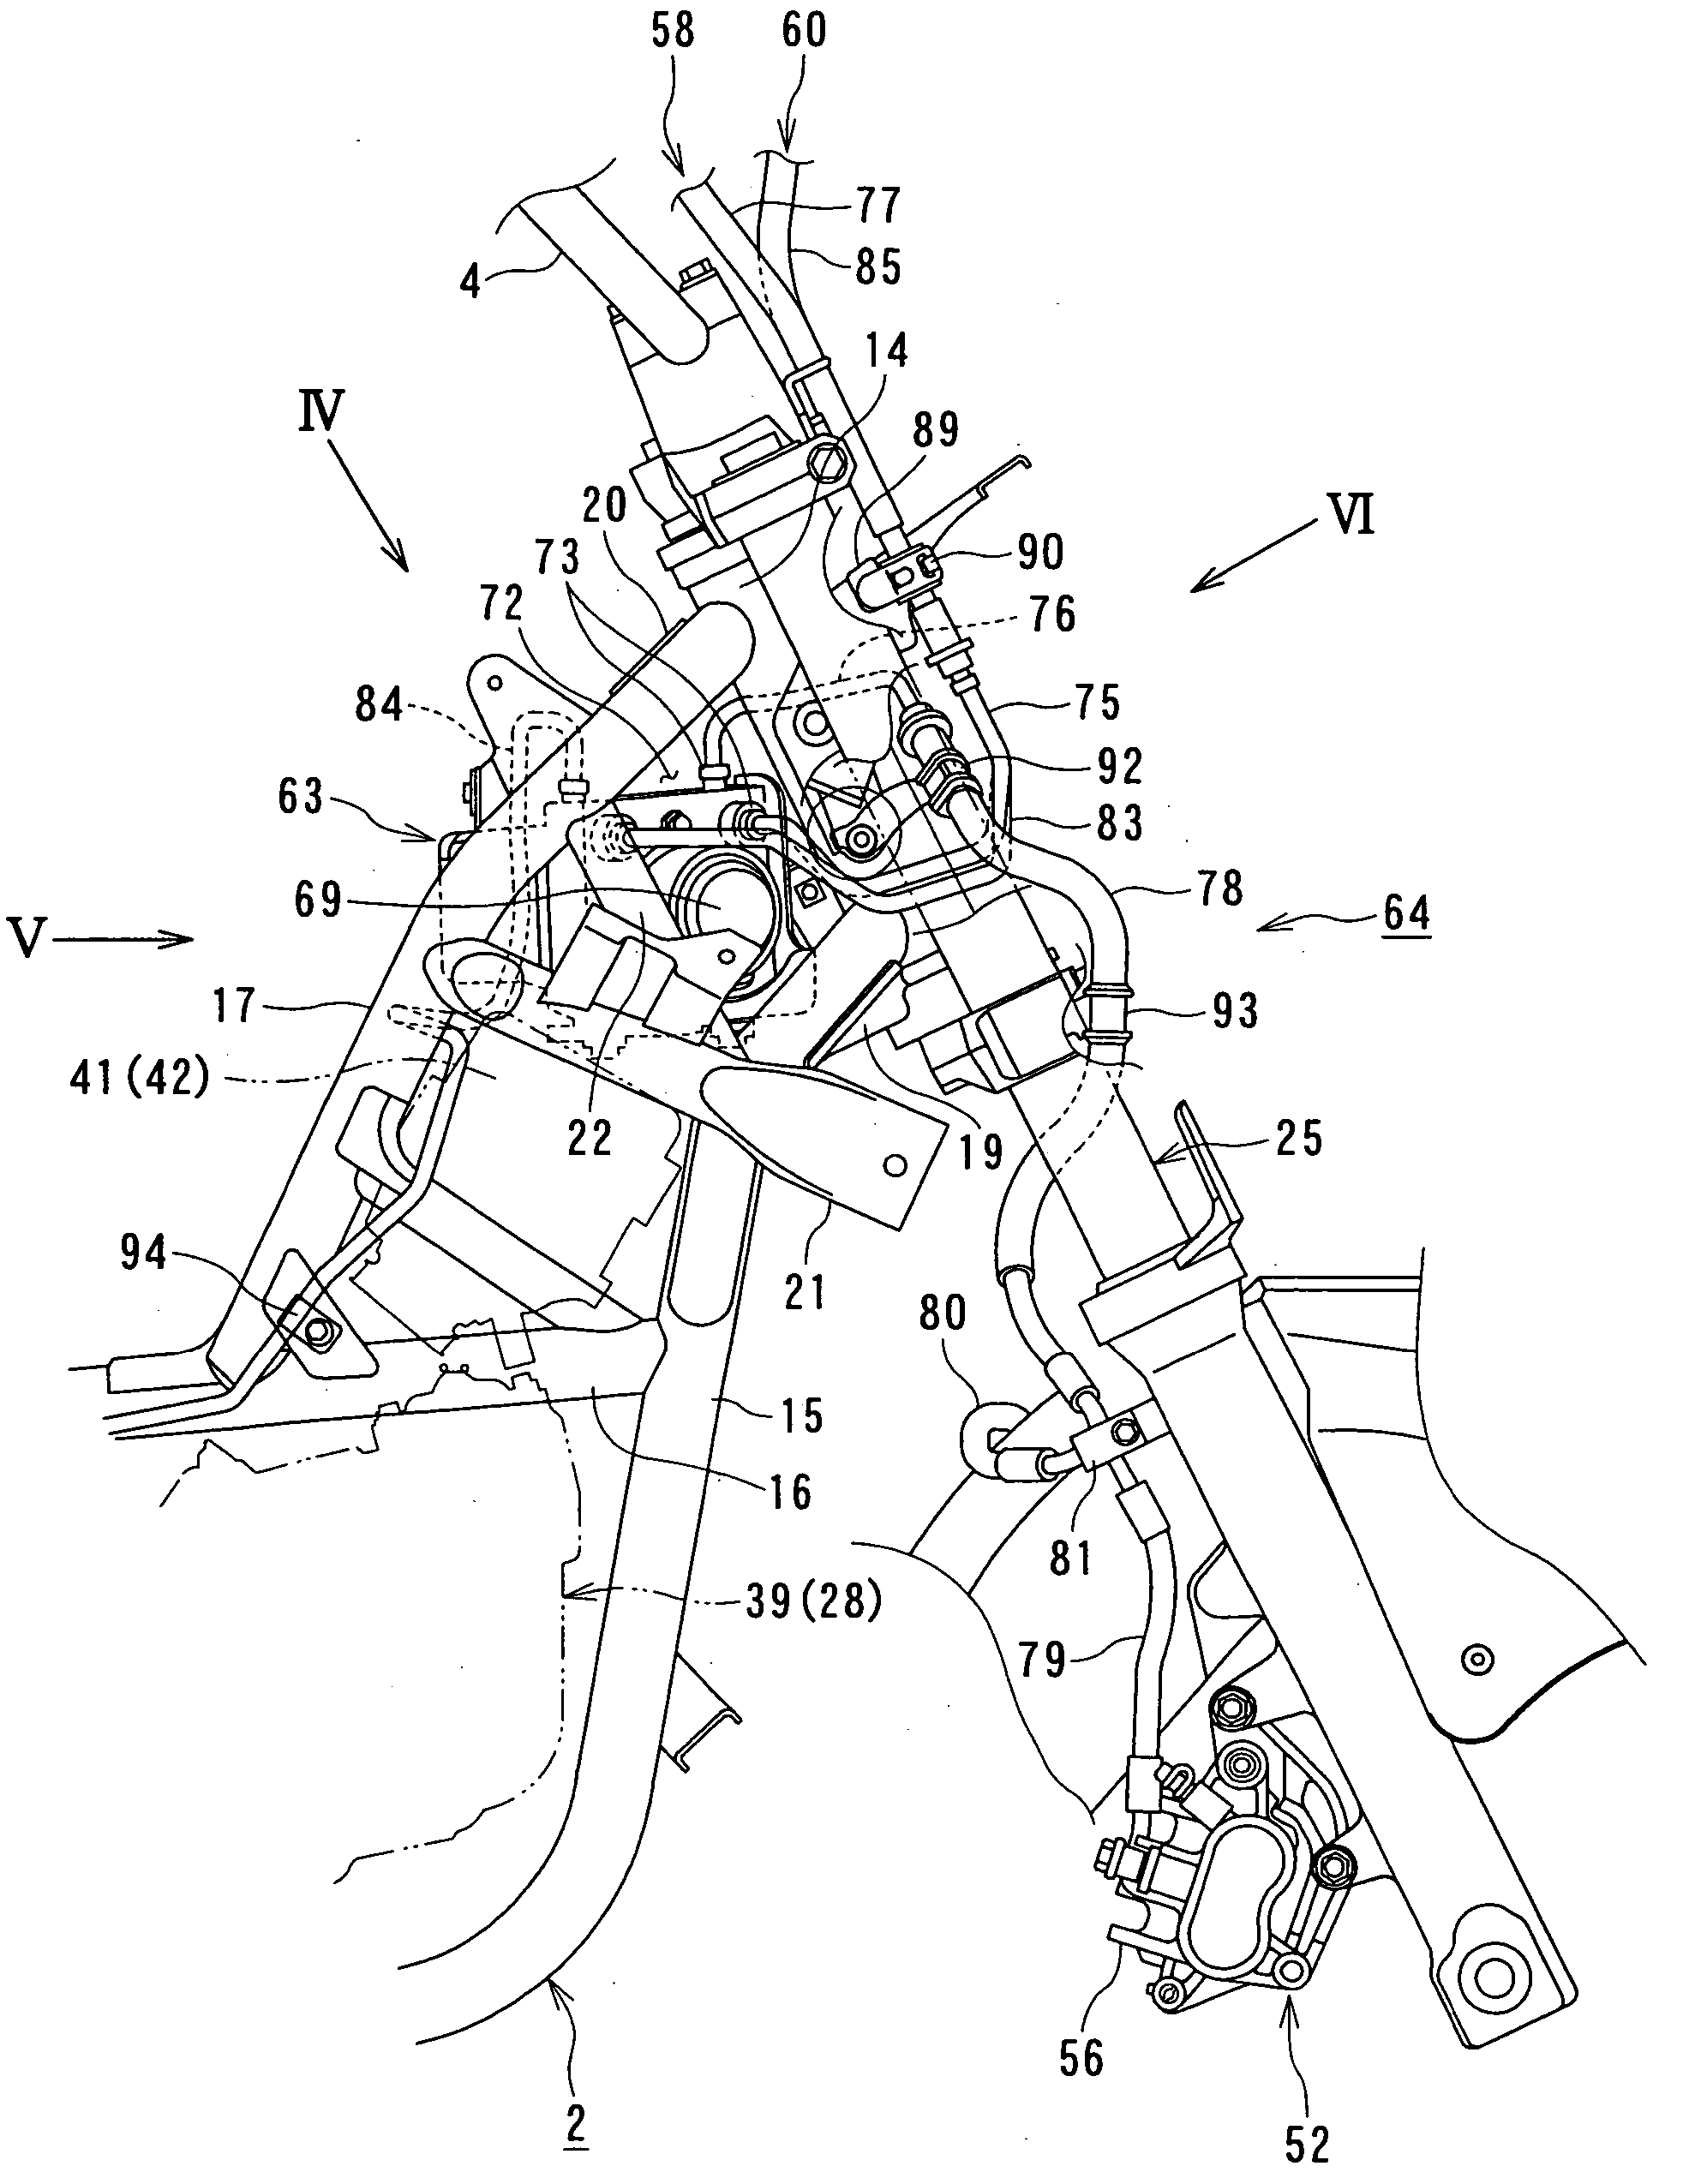 Motorcycle with antilock brake system